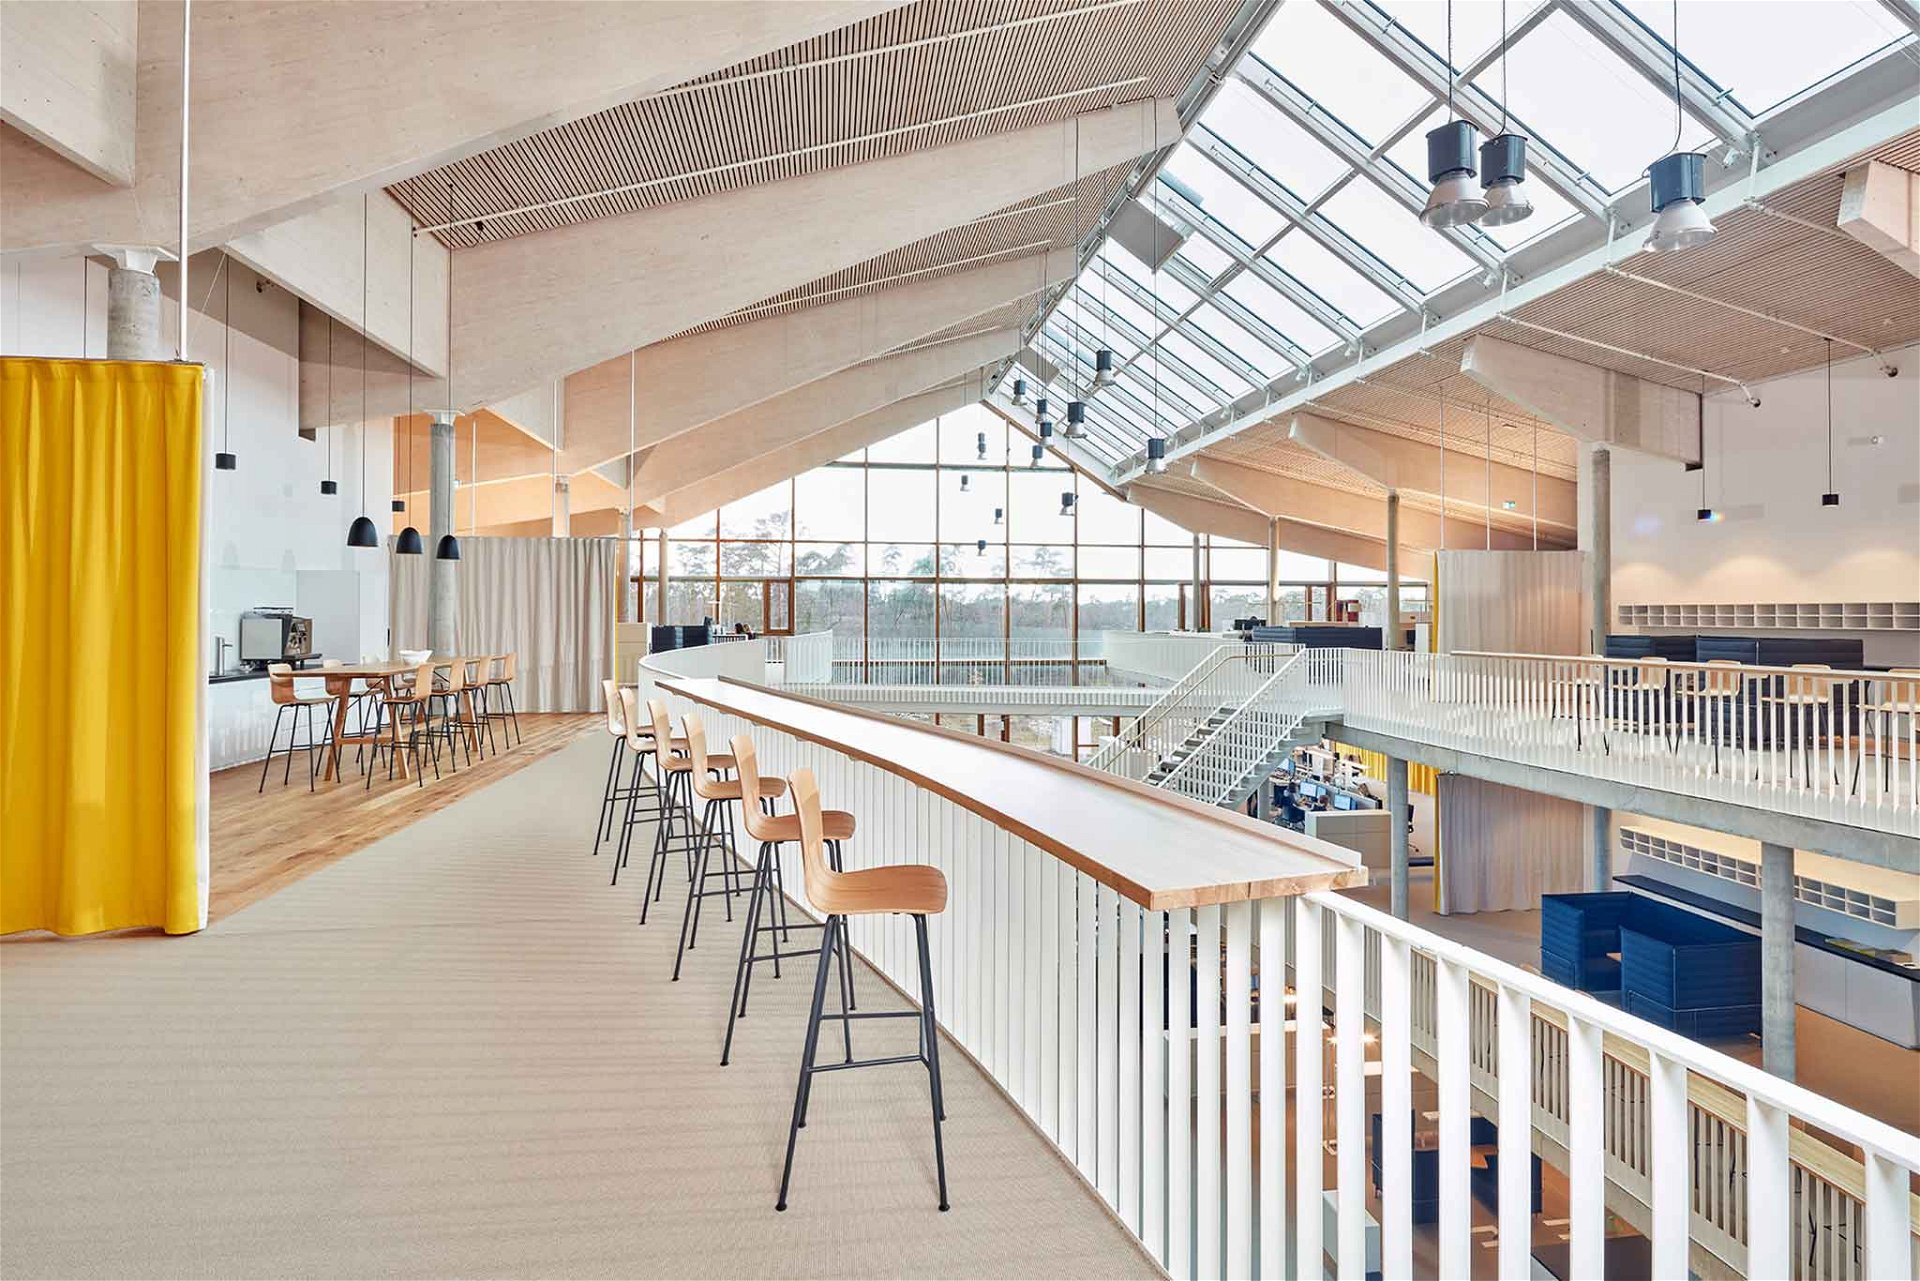 Deutscher Nachhaltigkeitspreis für den Alnatura-Campus, das größte Bürogebäude mit Stampflehmfassade und integrierter geothermischer Wandheizung in Europa.